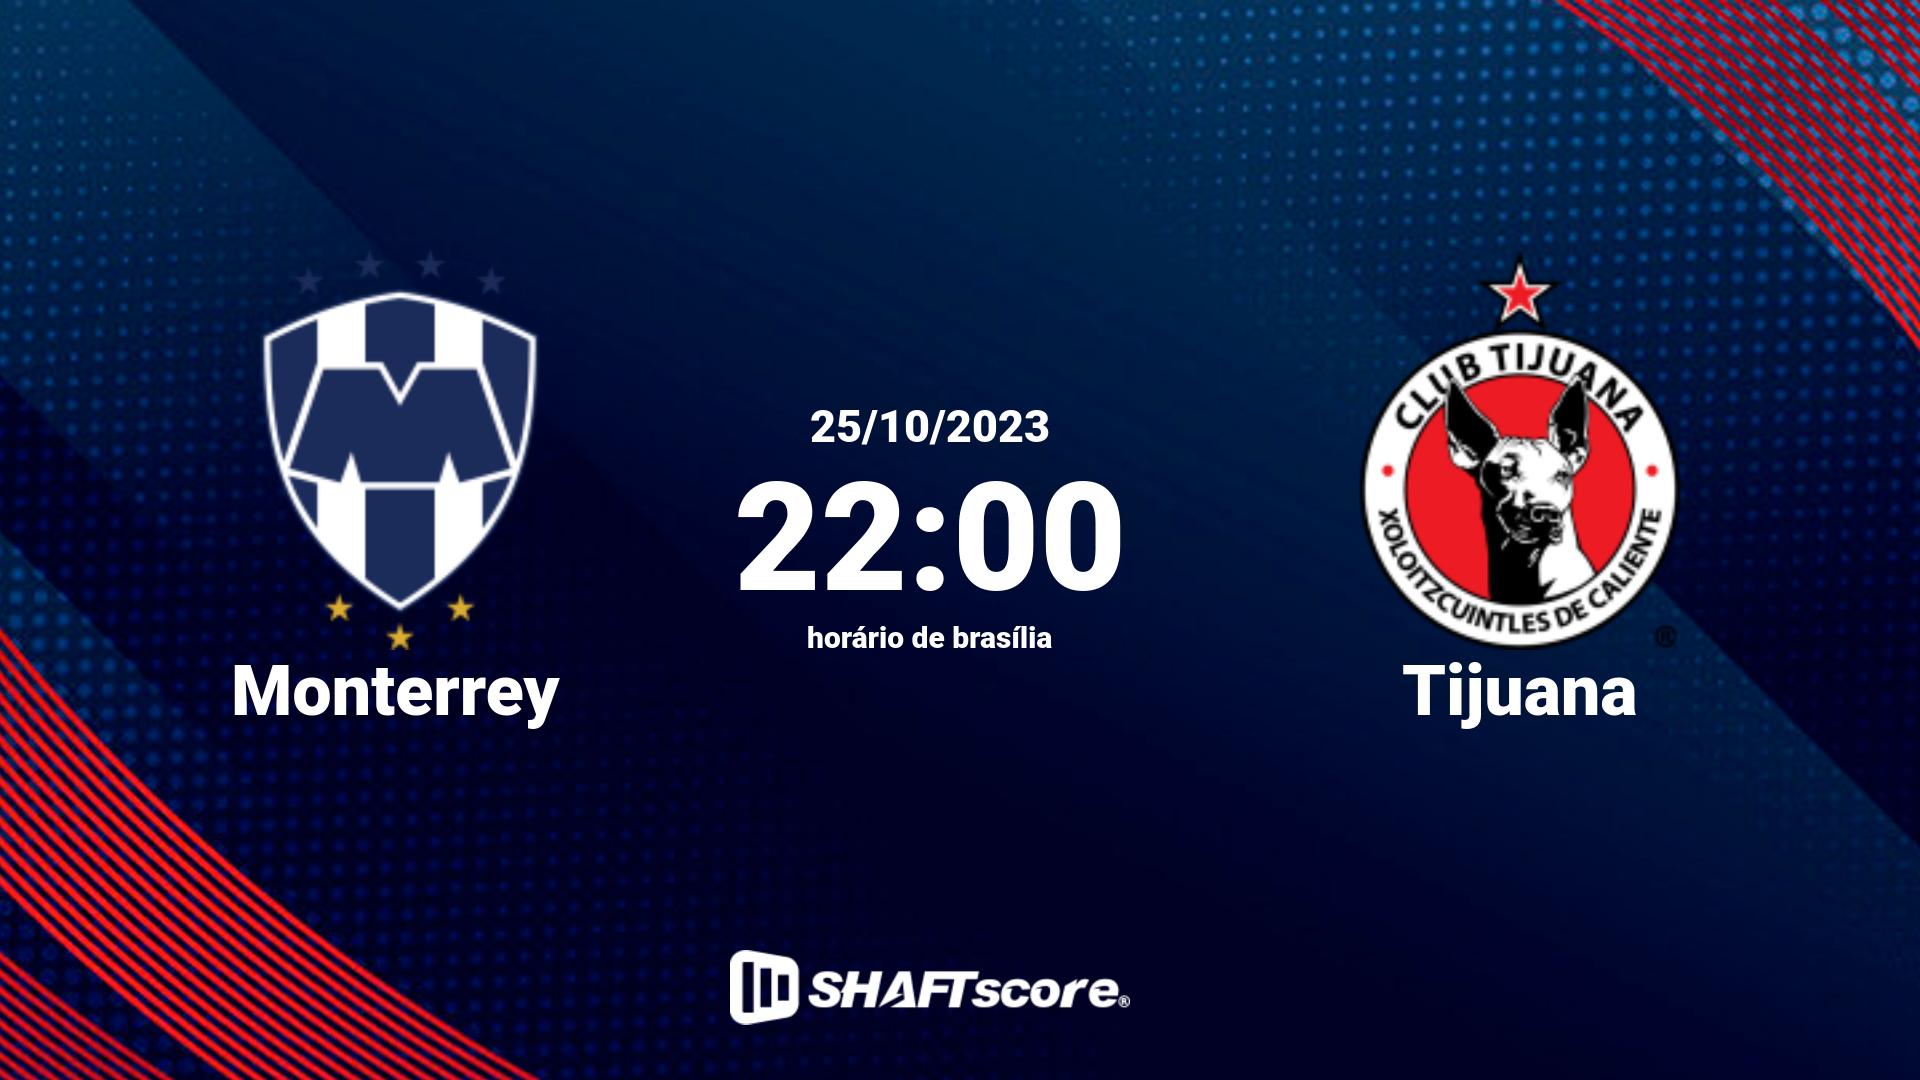 Estatísticas do jogo Monterrey vs Tijuana 25.10 22:00